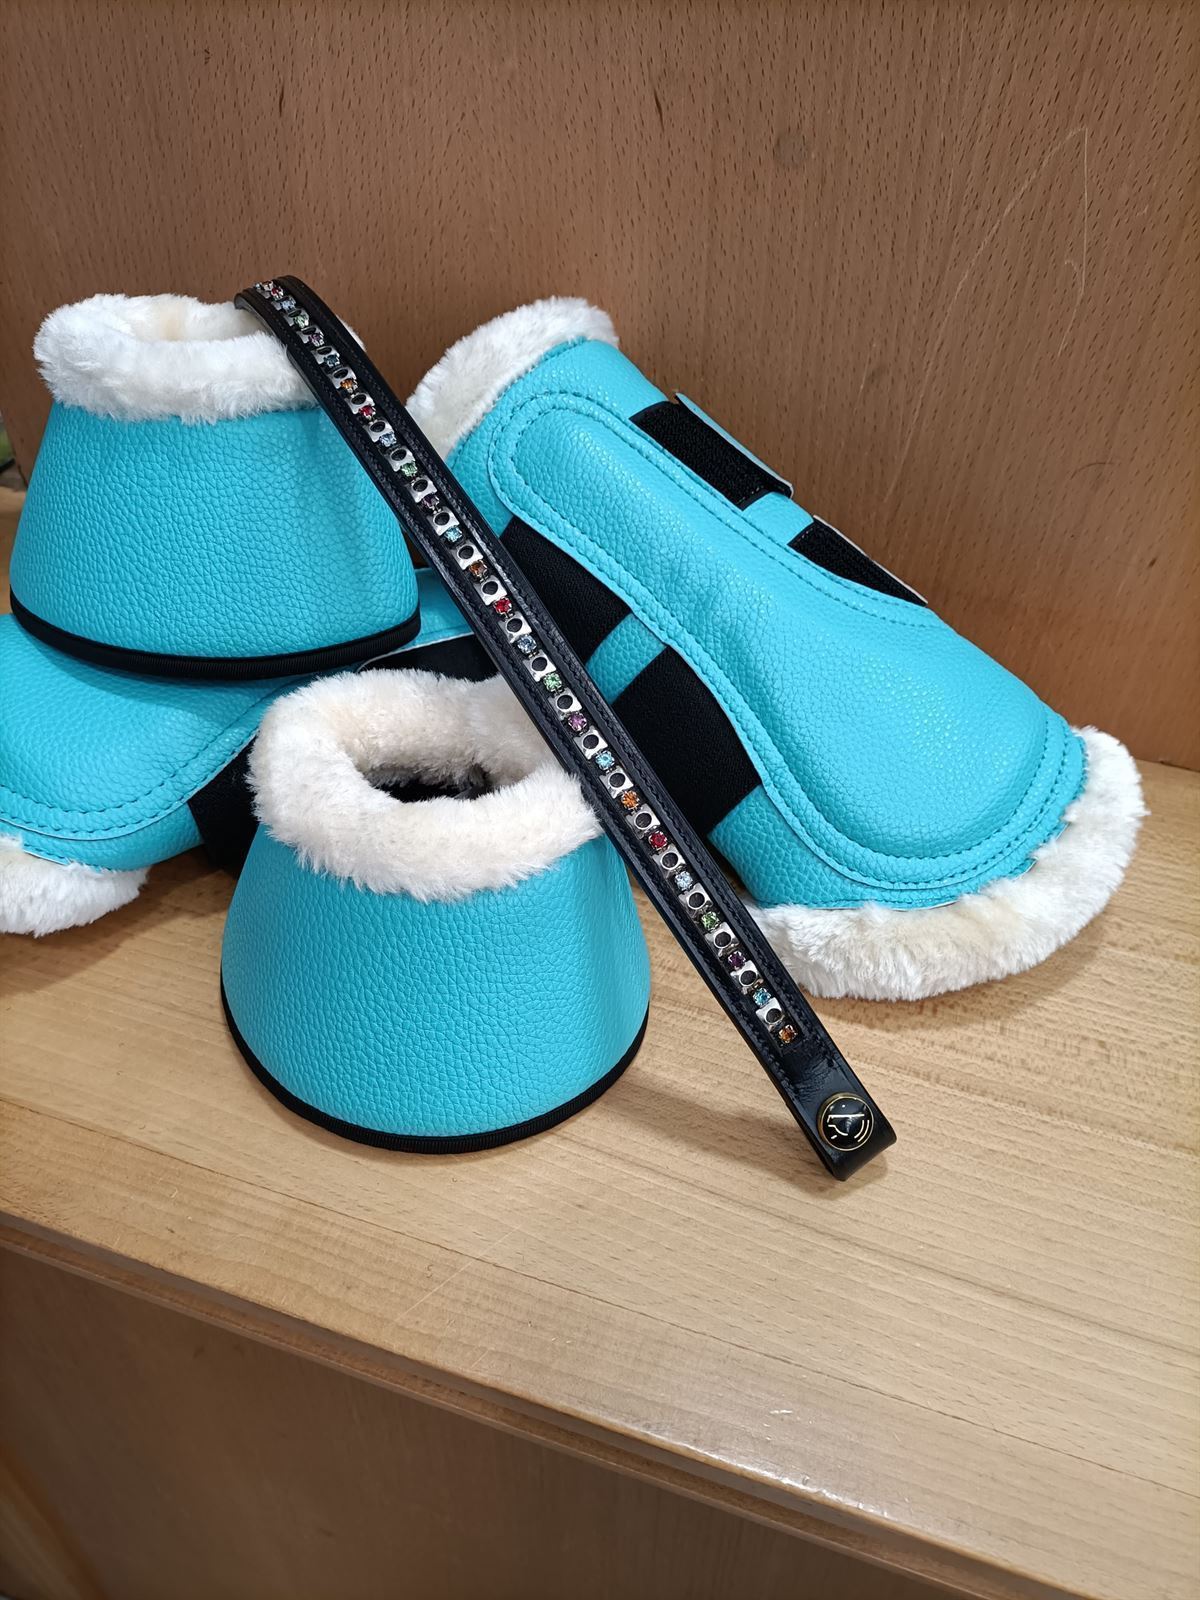 Protectores HKM Comfort Premium Fur color azul turquesa TALLA M (par) - Imagen 1